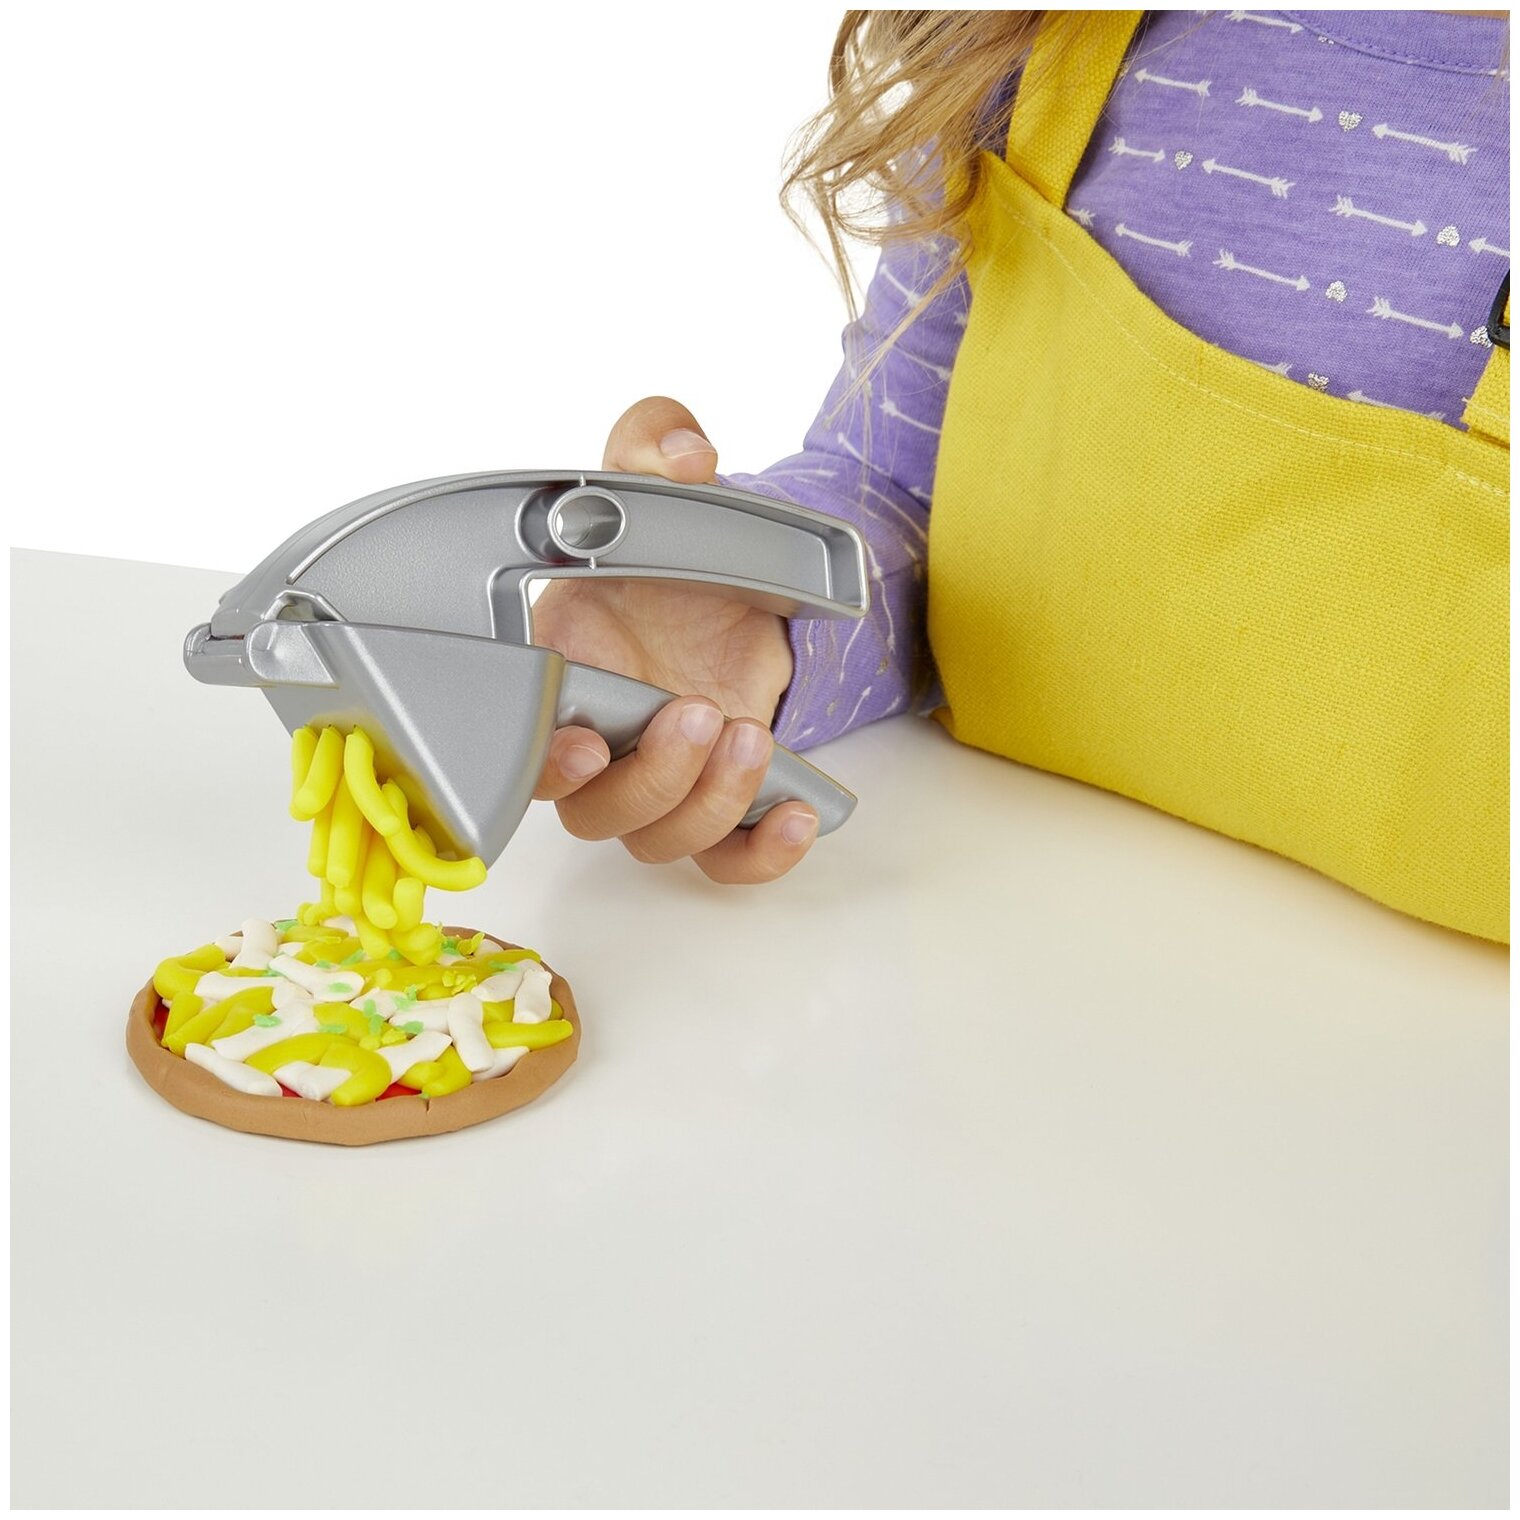 Игровые наборы и фигурки для детей Hasbro Play-Doh - фото №7